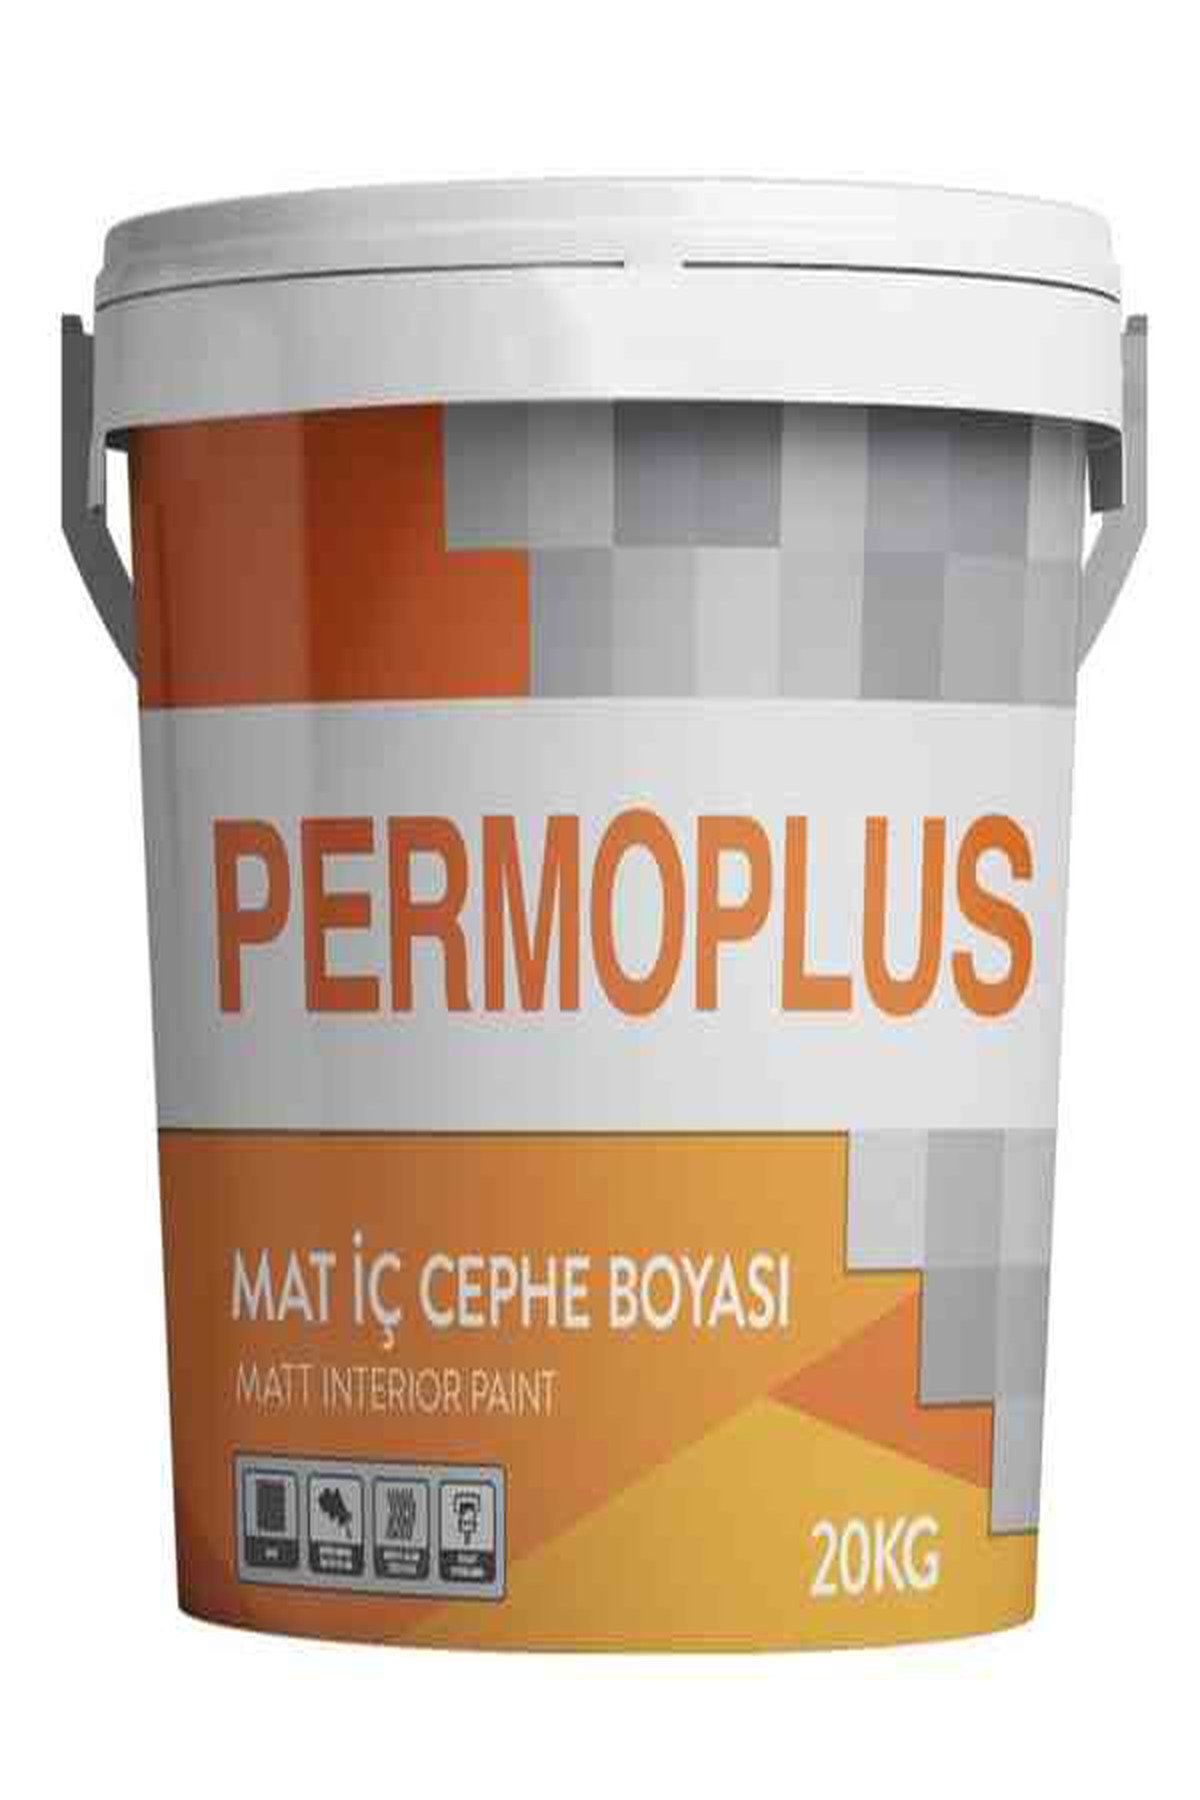 Permolit Permoplus Plastik Mat Iç Cephe Boyası Havai